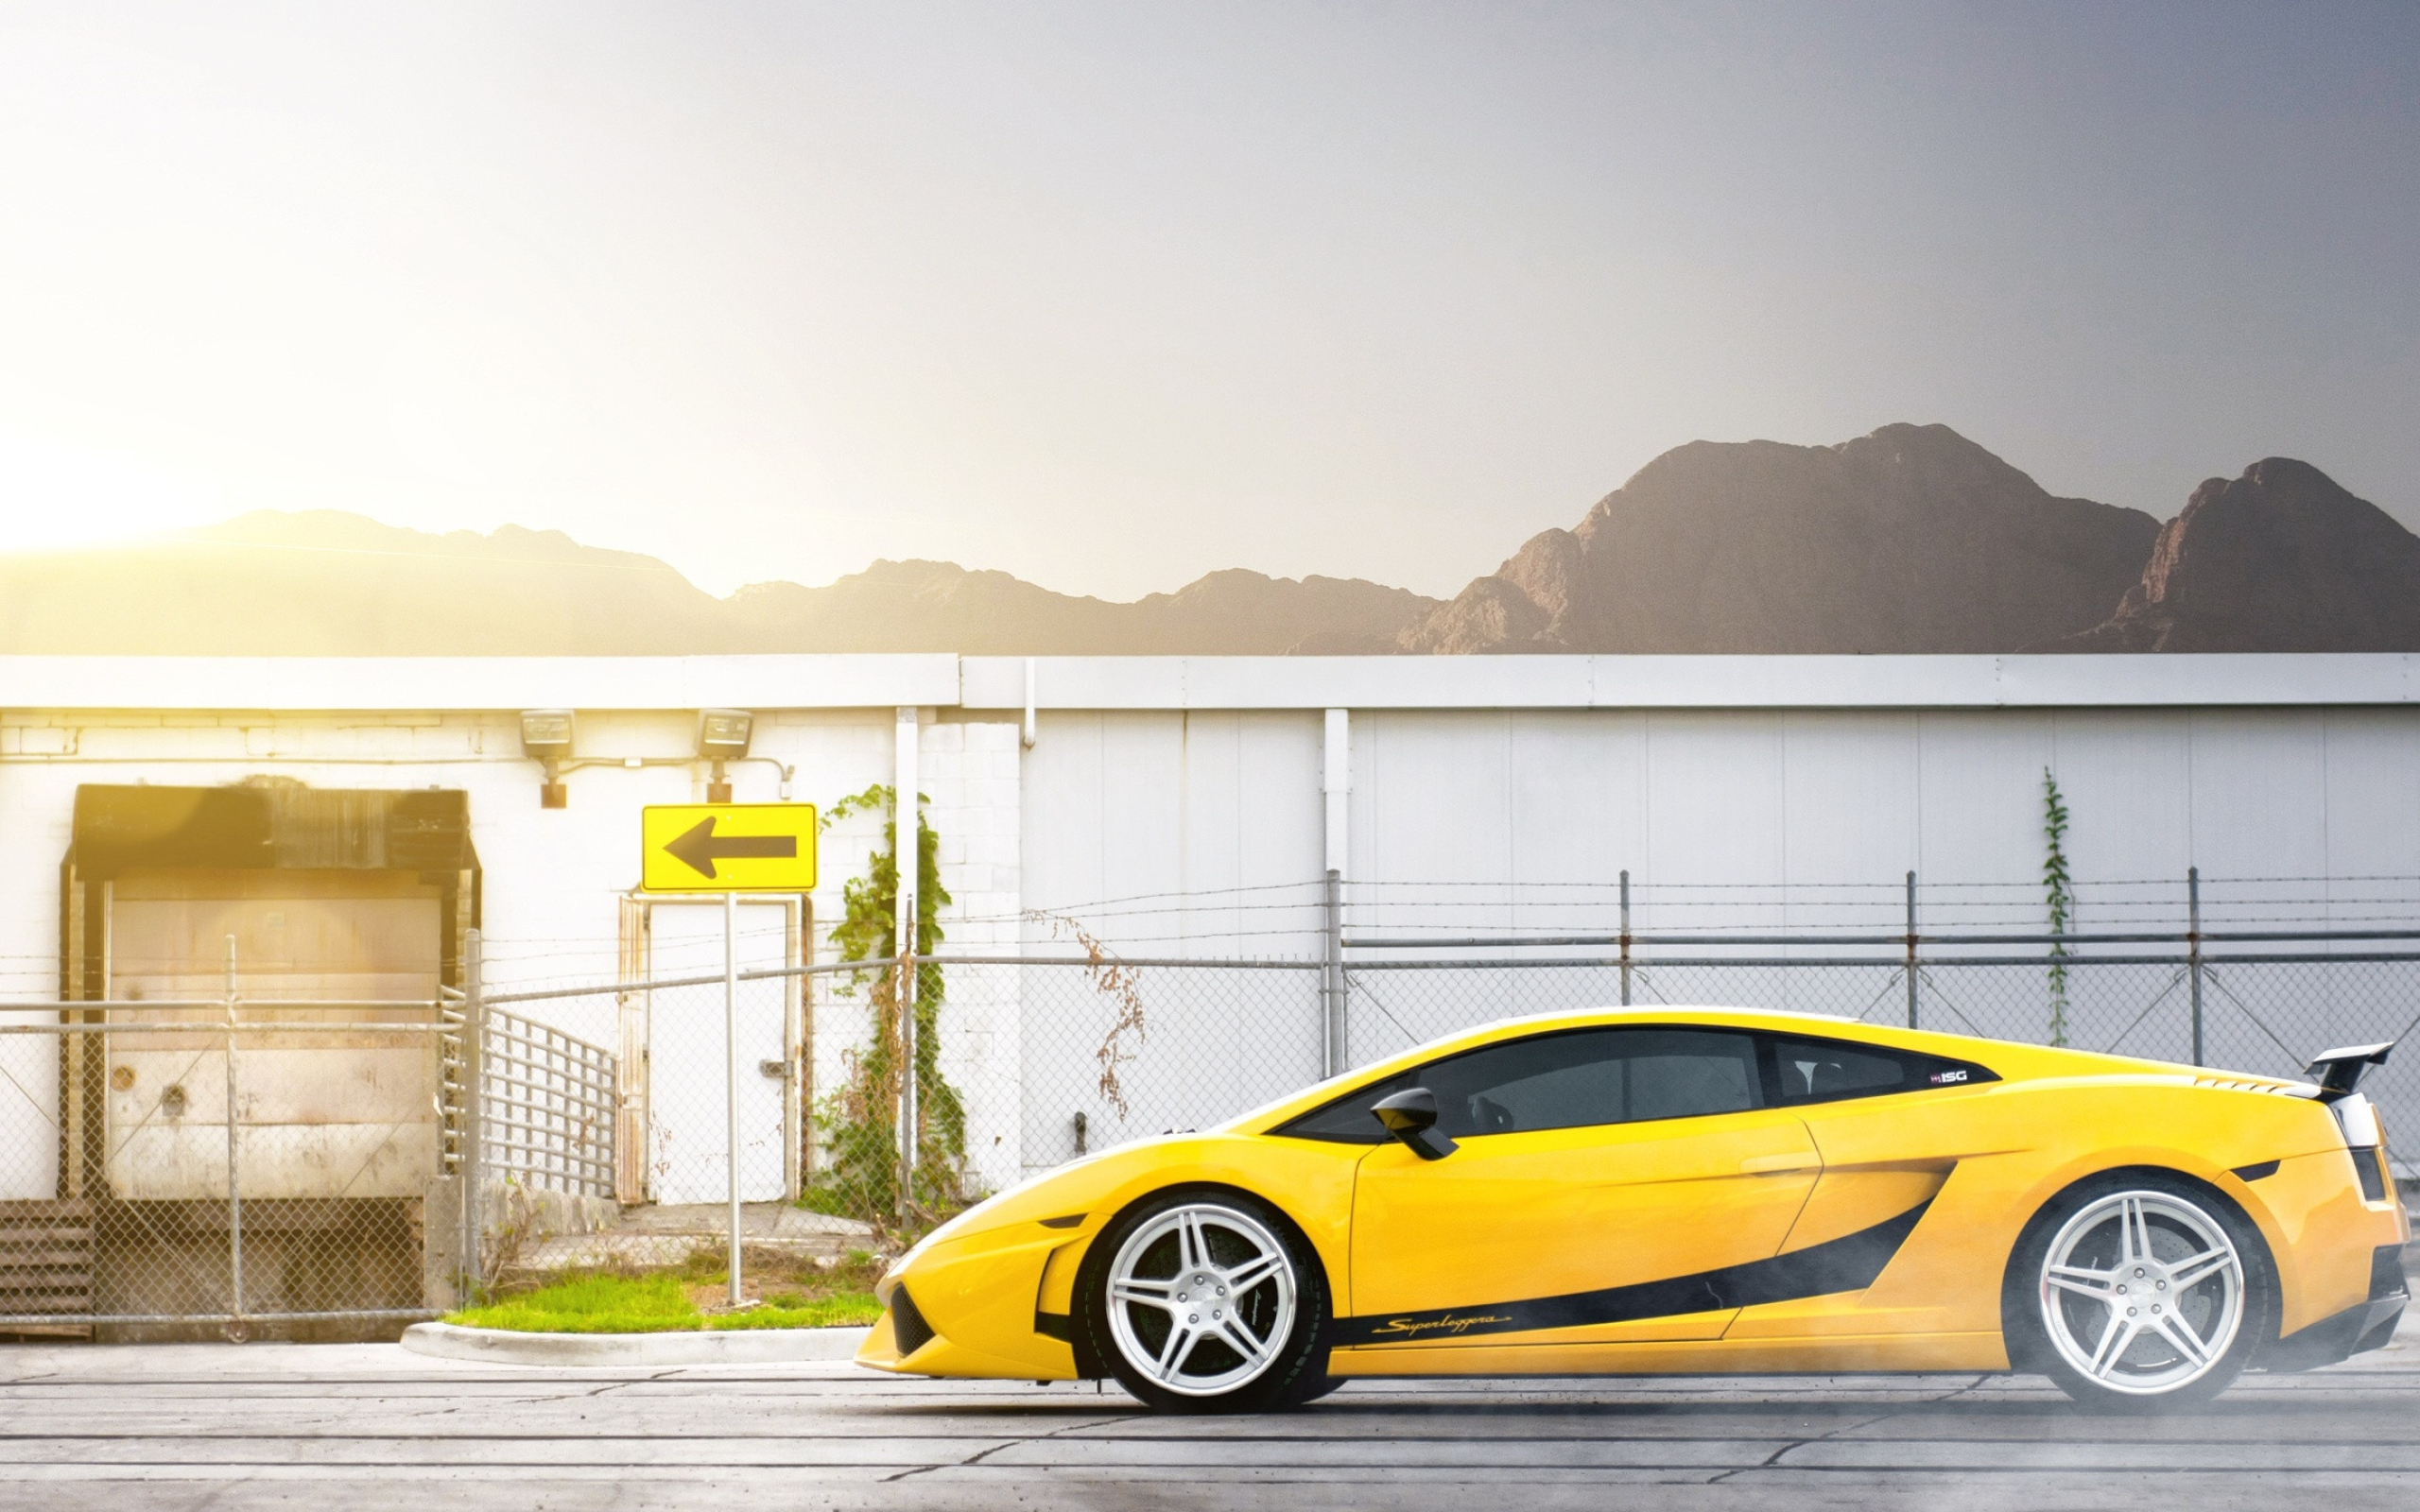 2013 Lamborghini Gallardo, Superleggera wallpaper, Car wallpapers, Automotive beauty, 2560x1600 HD Desktop